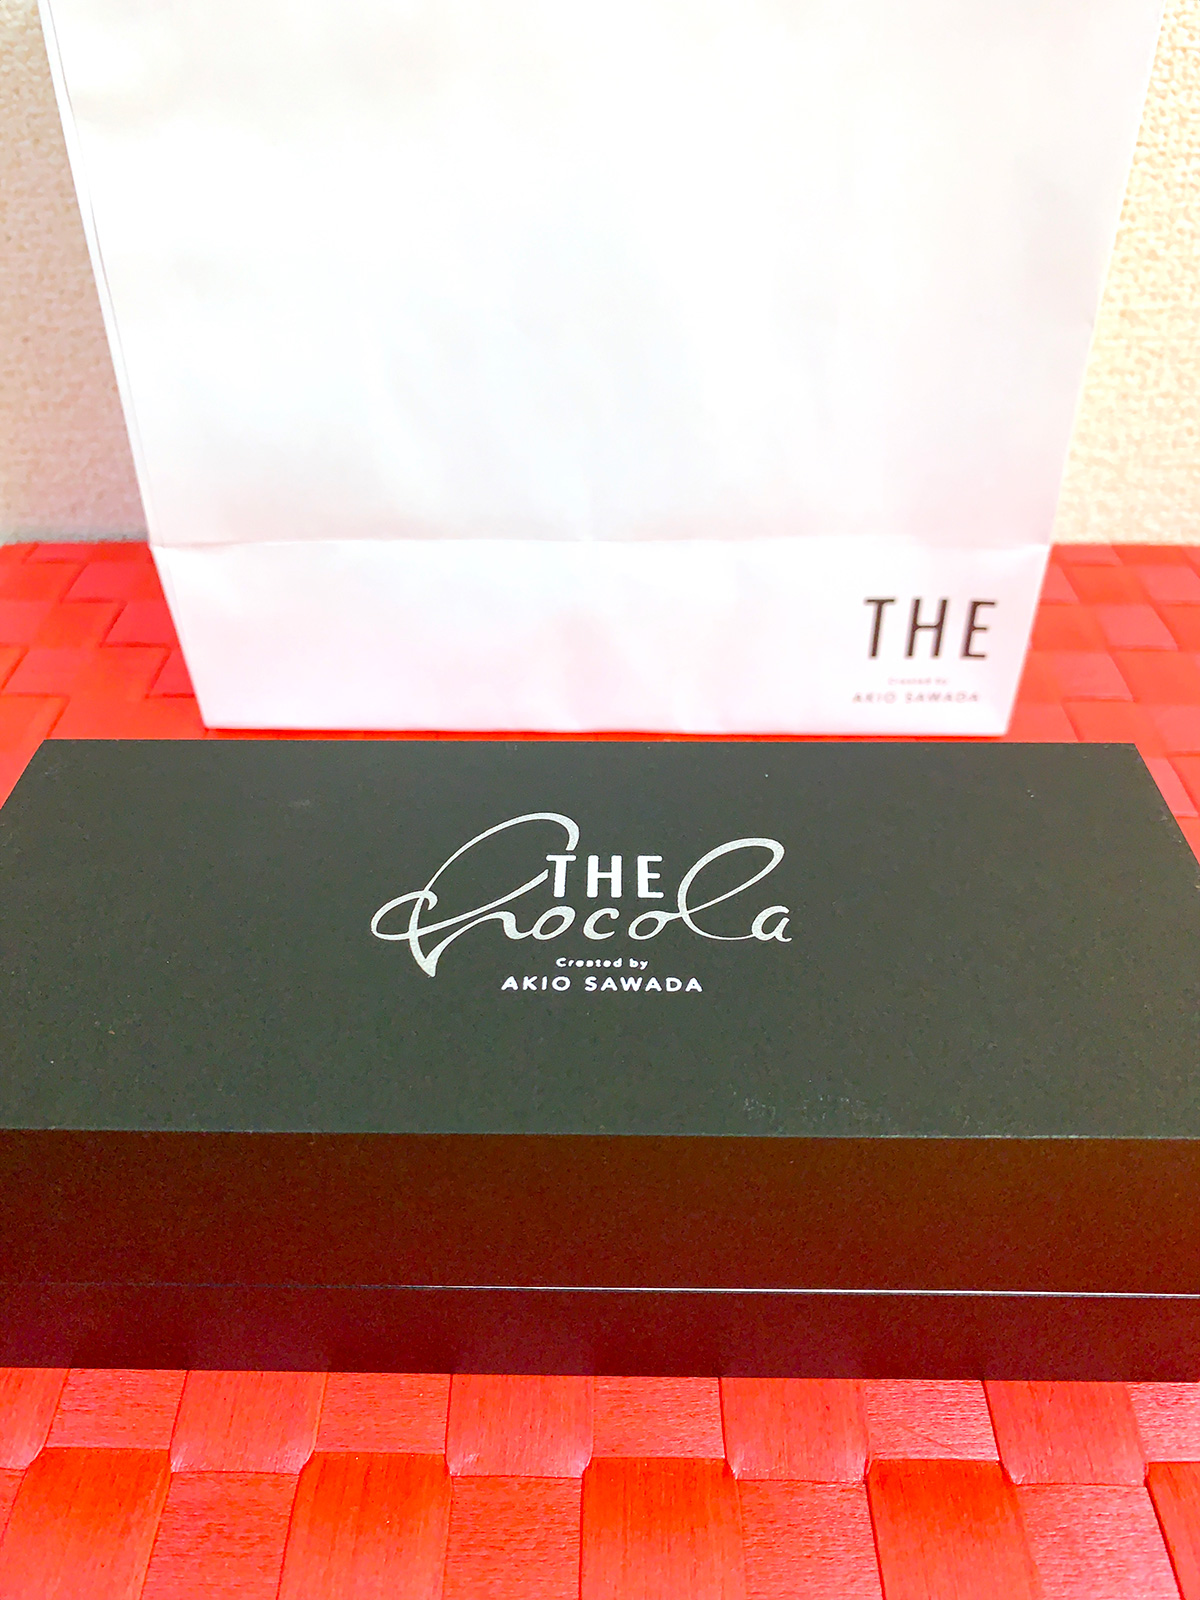 THE Chocolaの箱